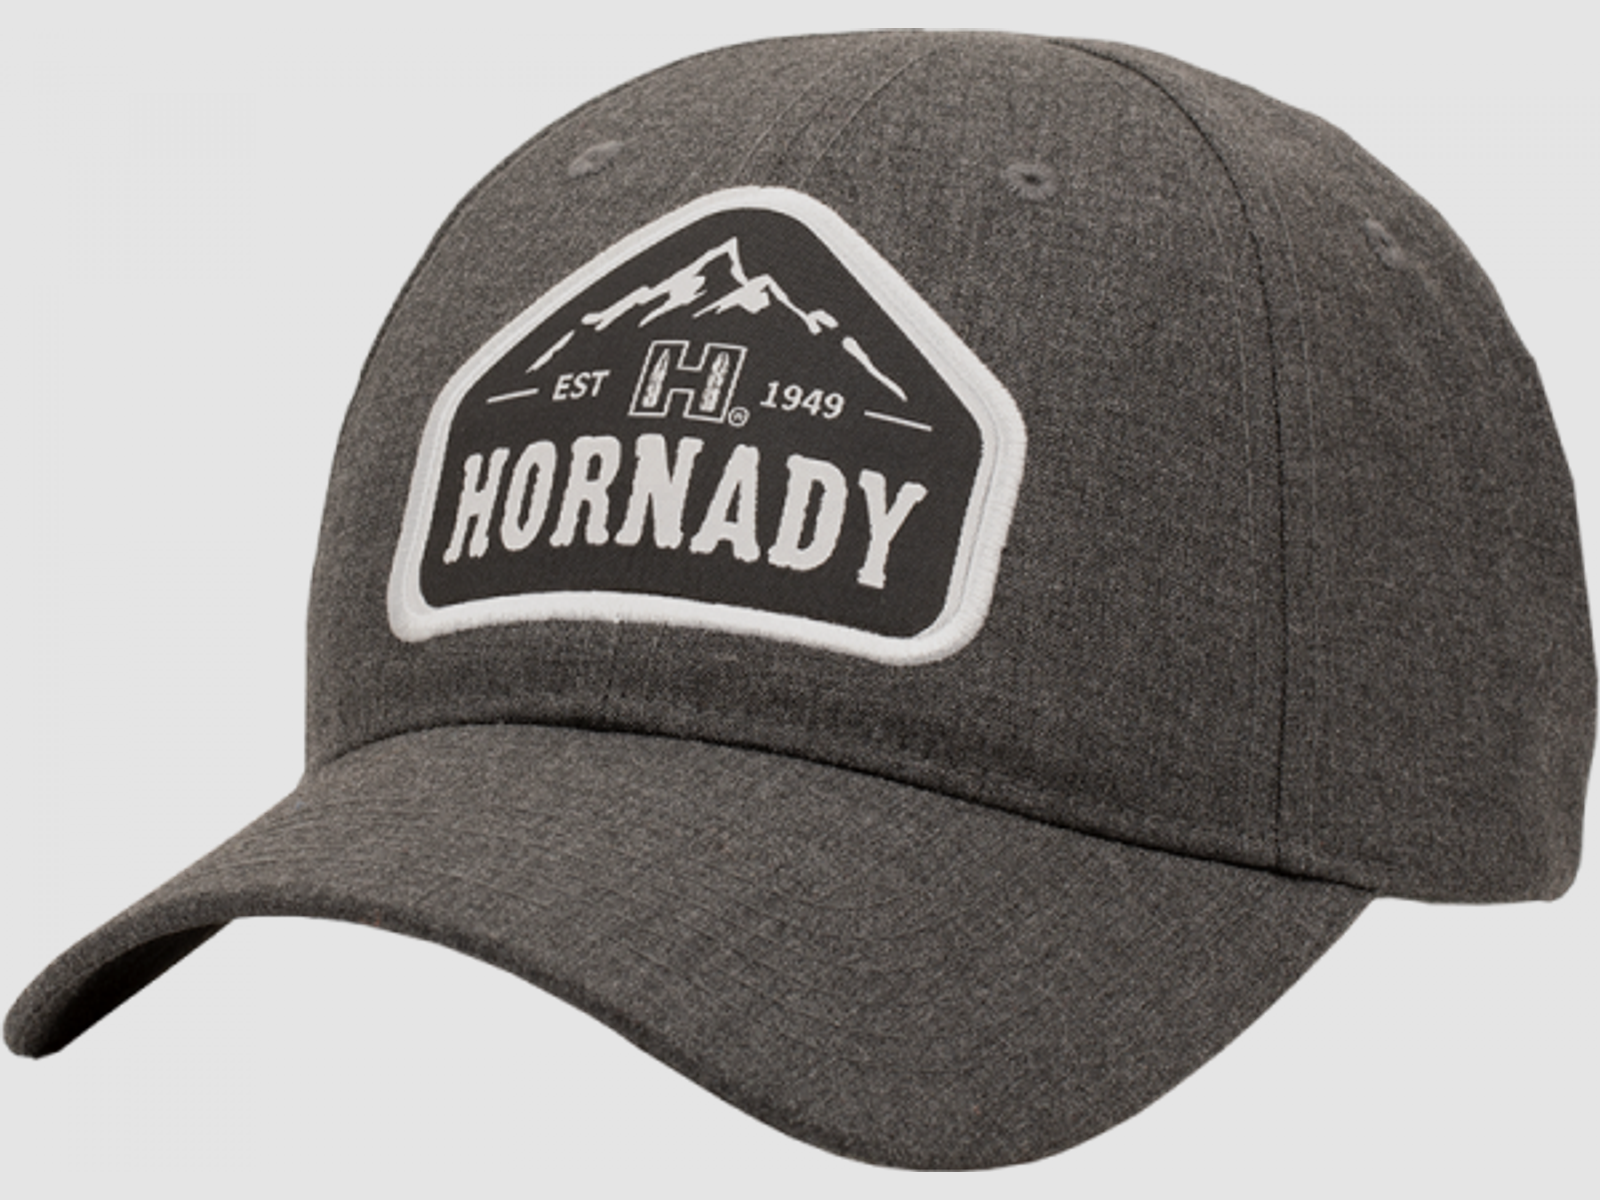 Hornady Gray Mountain Basecap